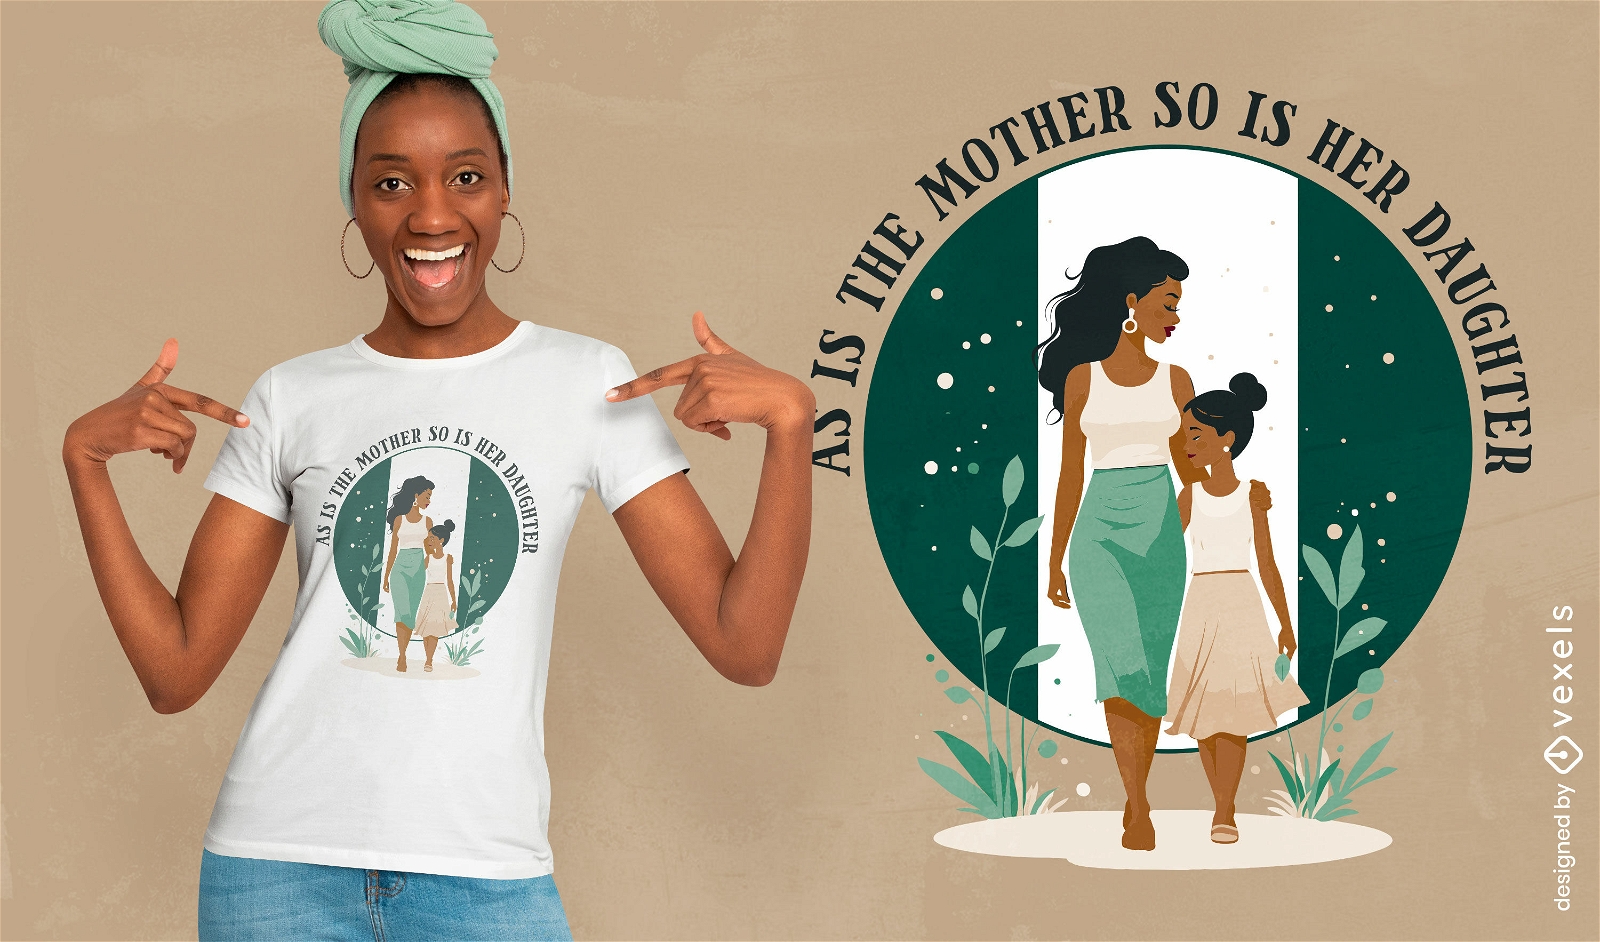 Dise?o de camiseta nigeriana vintage de madre e hija.